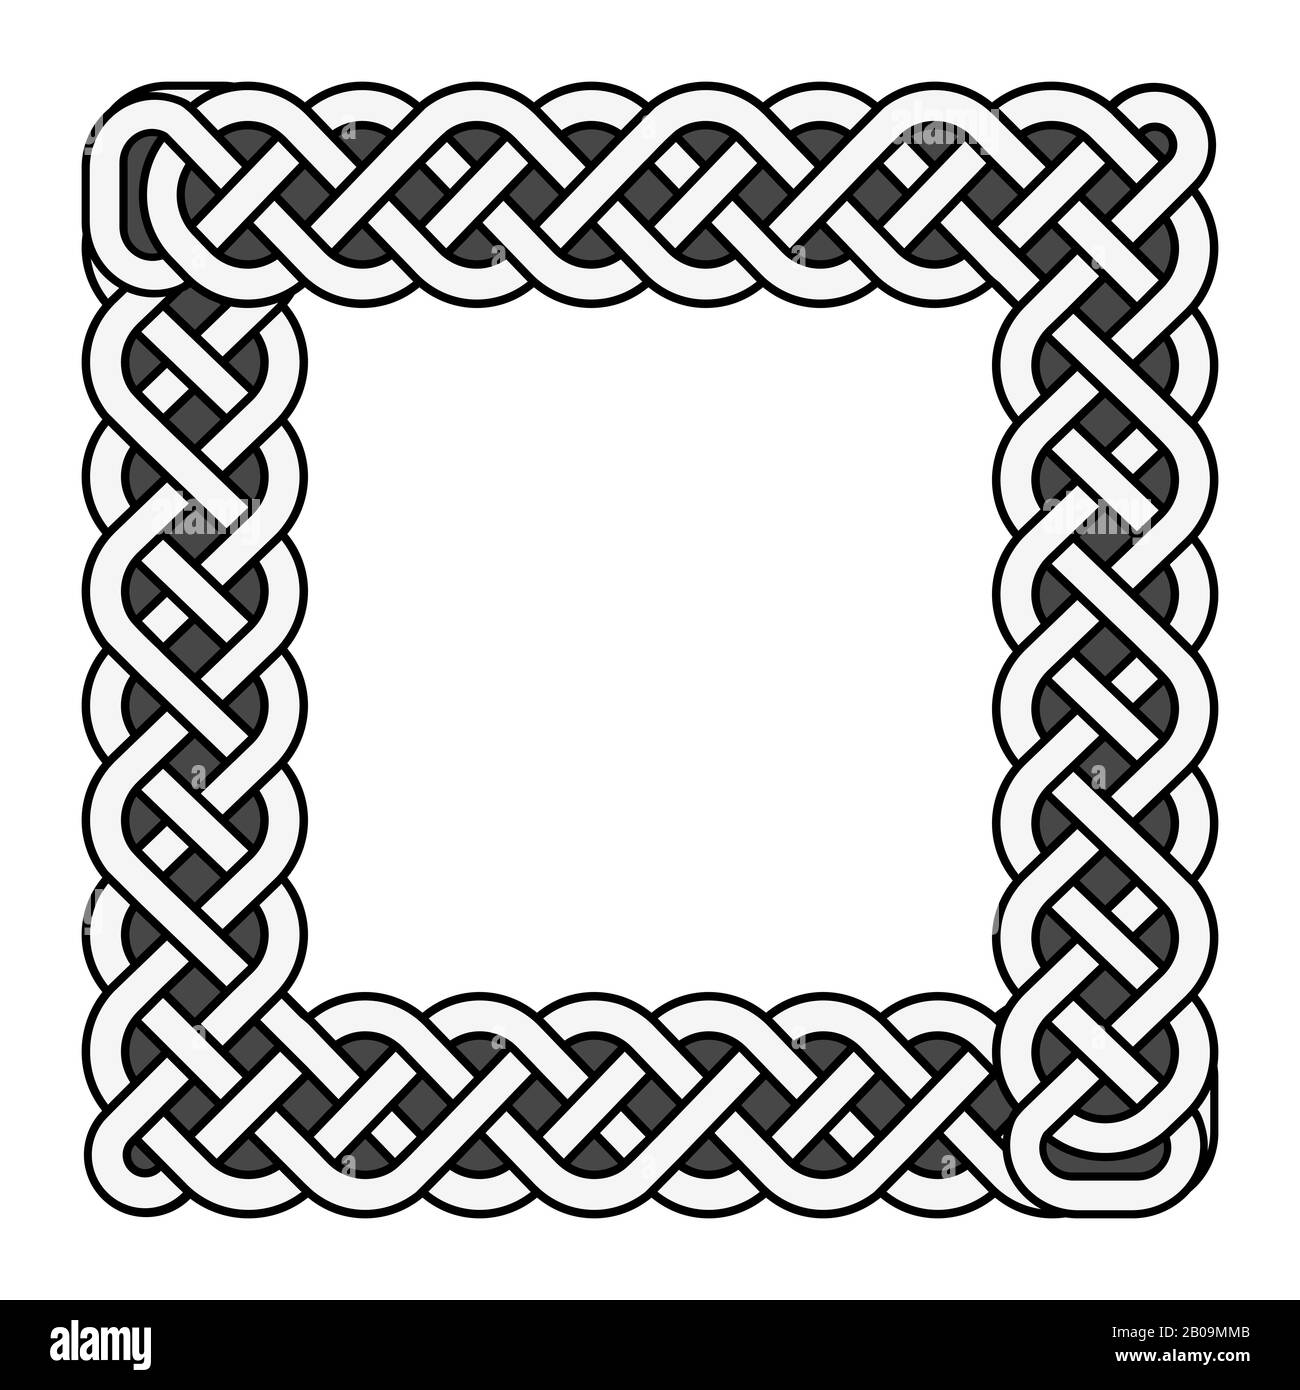 Eckige keltische Knoten Vektor Mittelalterrahmen in schwarz und weiß. Traditionelle ethnische iren Knotengrenz-Illustration Stock Vektor